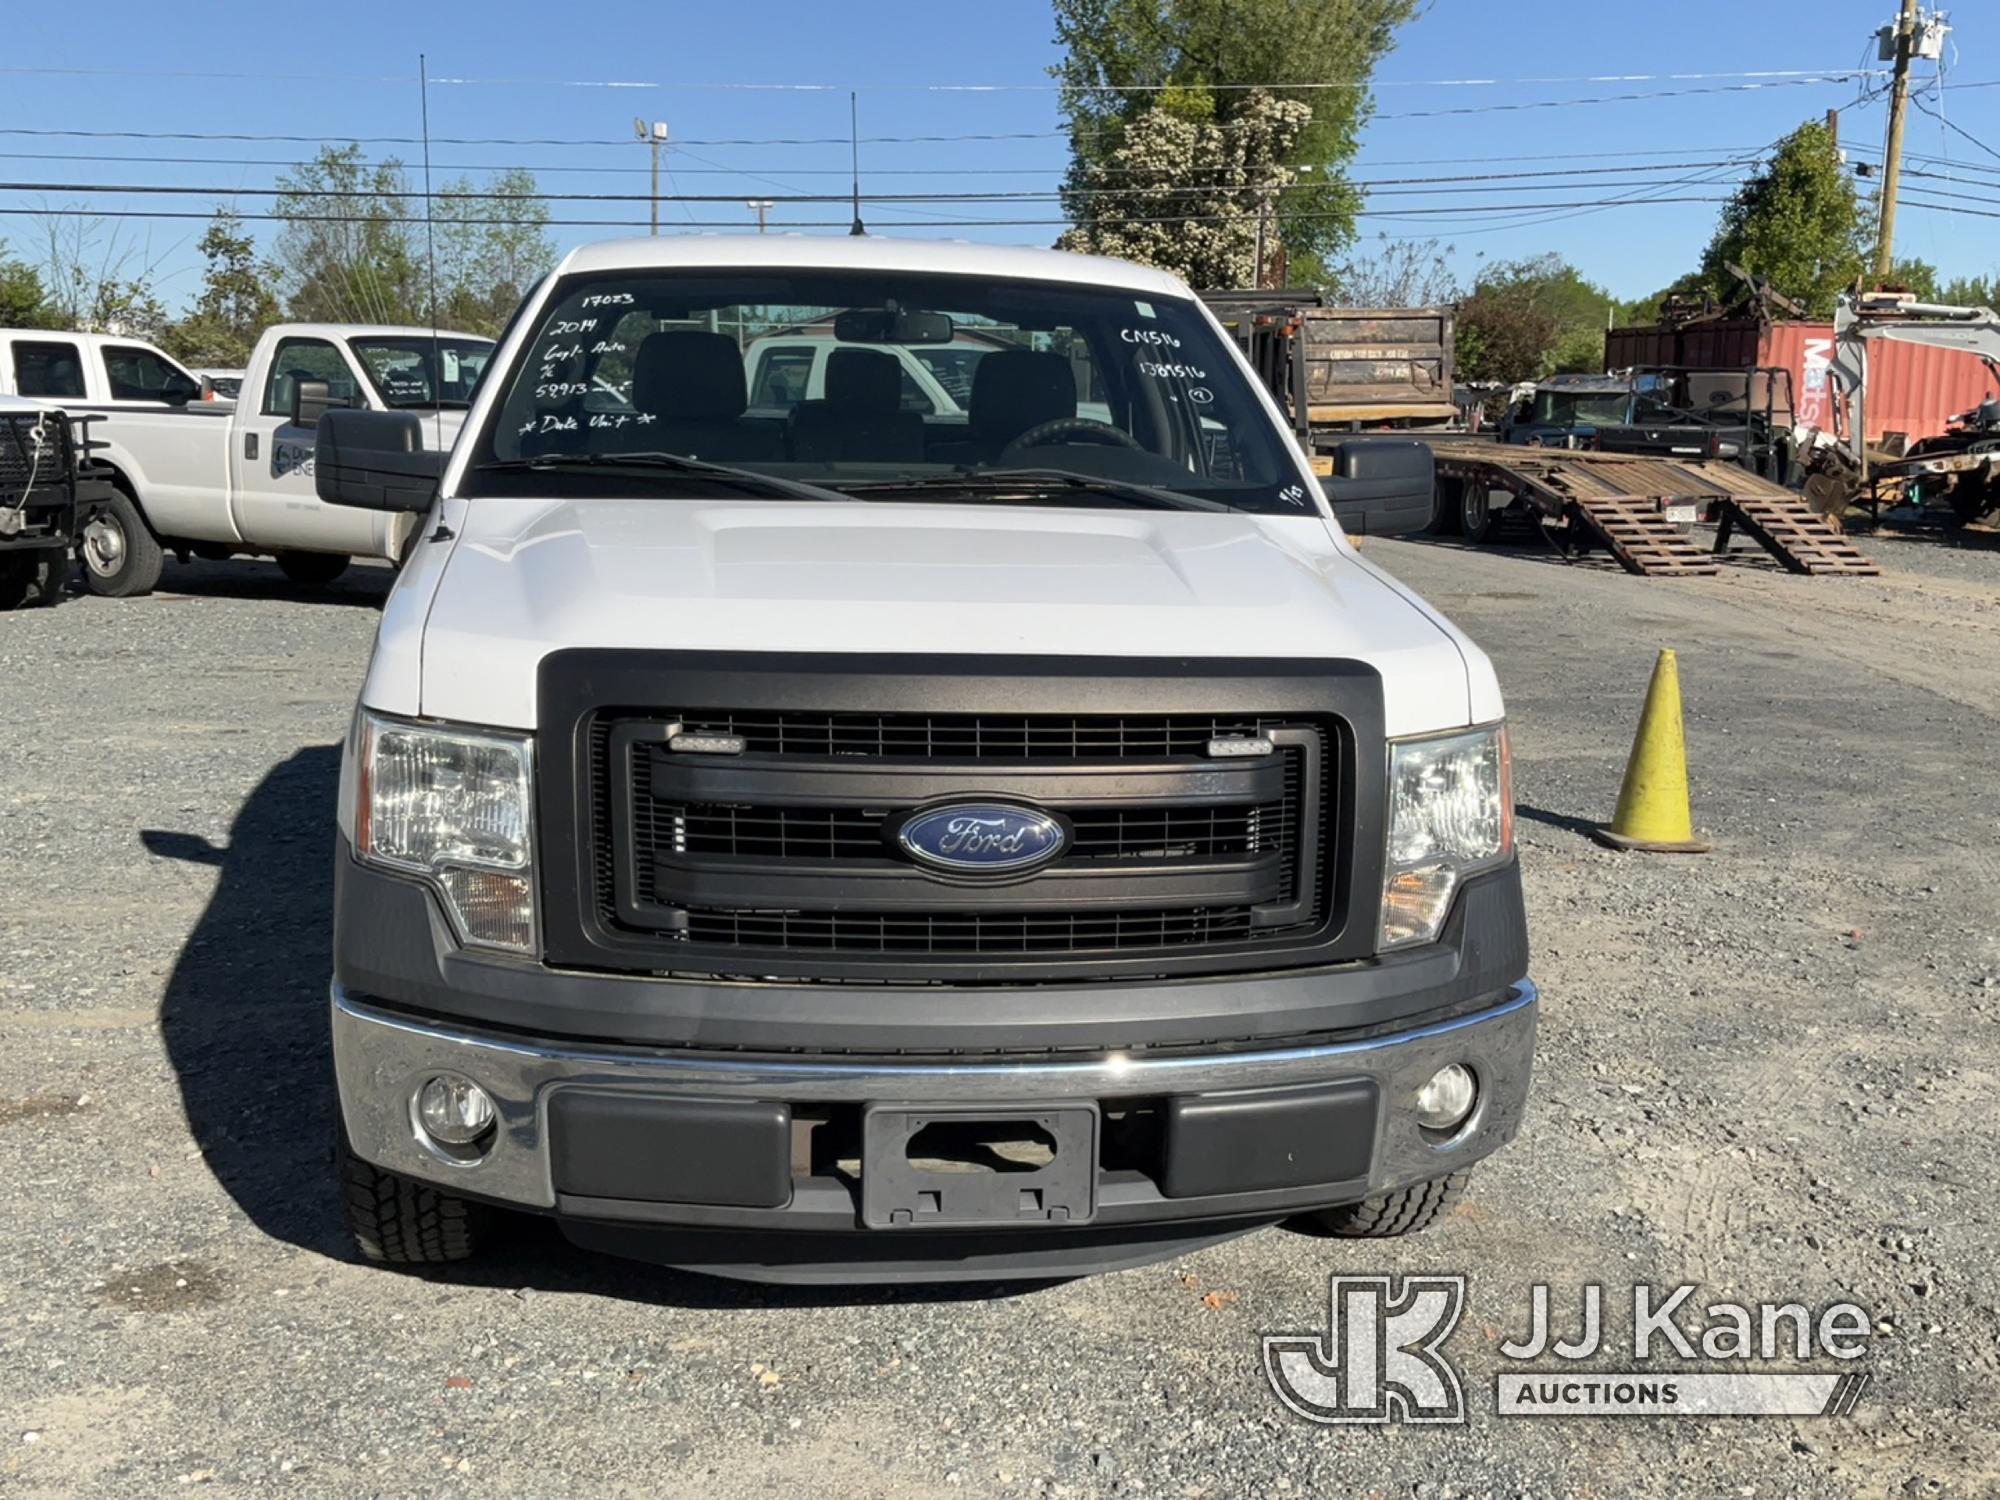 (Charlotte, NC) 2014 Ford F150 Pickup Truck Duke Unit) (Runs & Moves